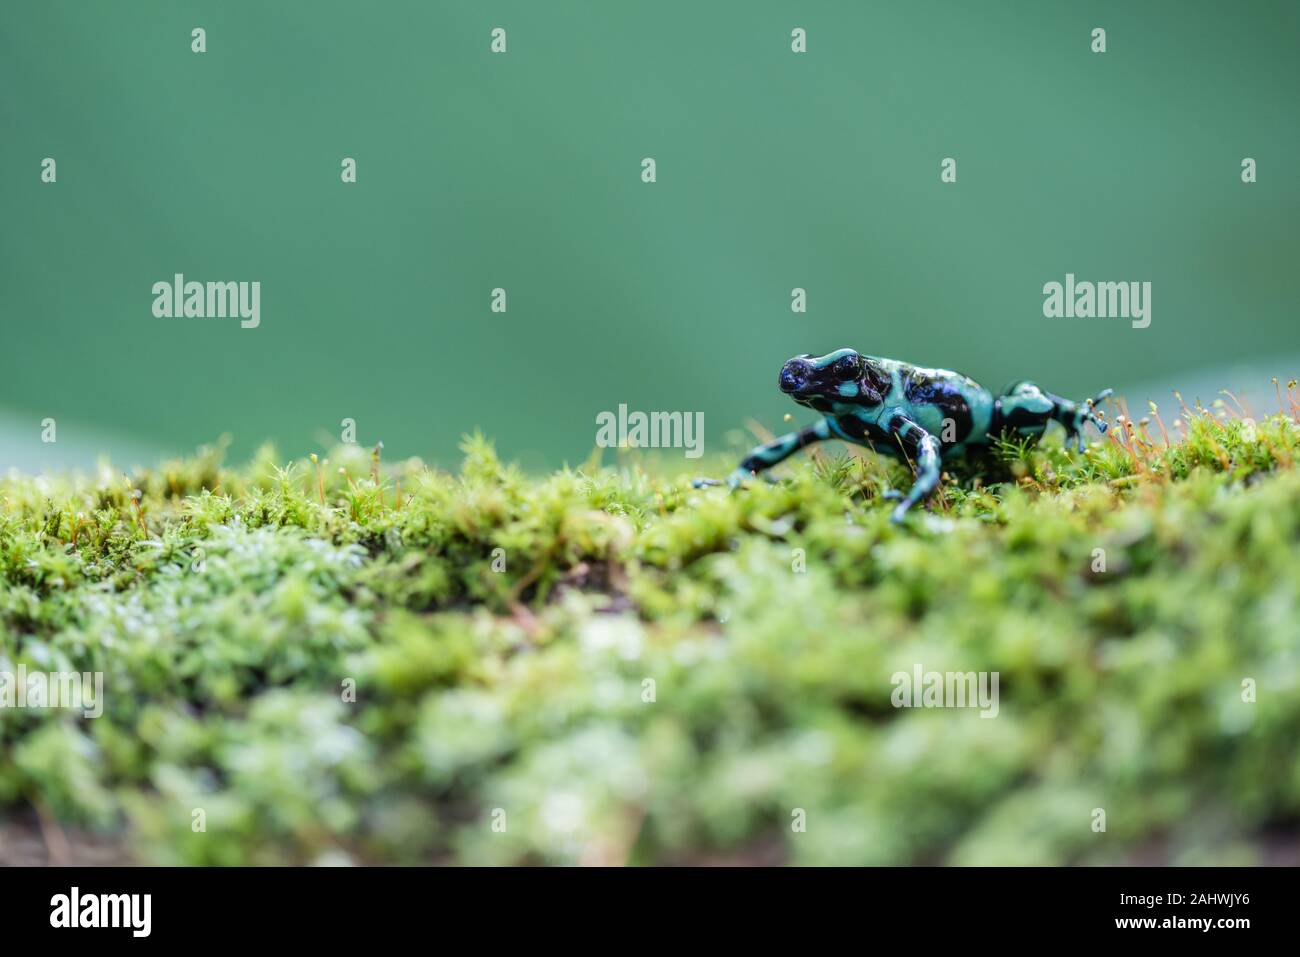 Die grünen und schwarzen Poison dart Frog (Dendrobates auratus) in einer kontrollierten Umgebung. Laguna del Lagarto, Costa Rica. Stockfoto